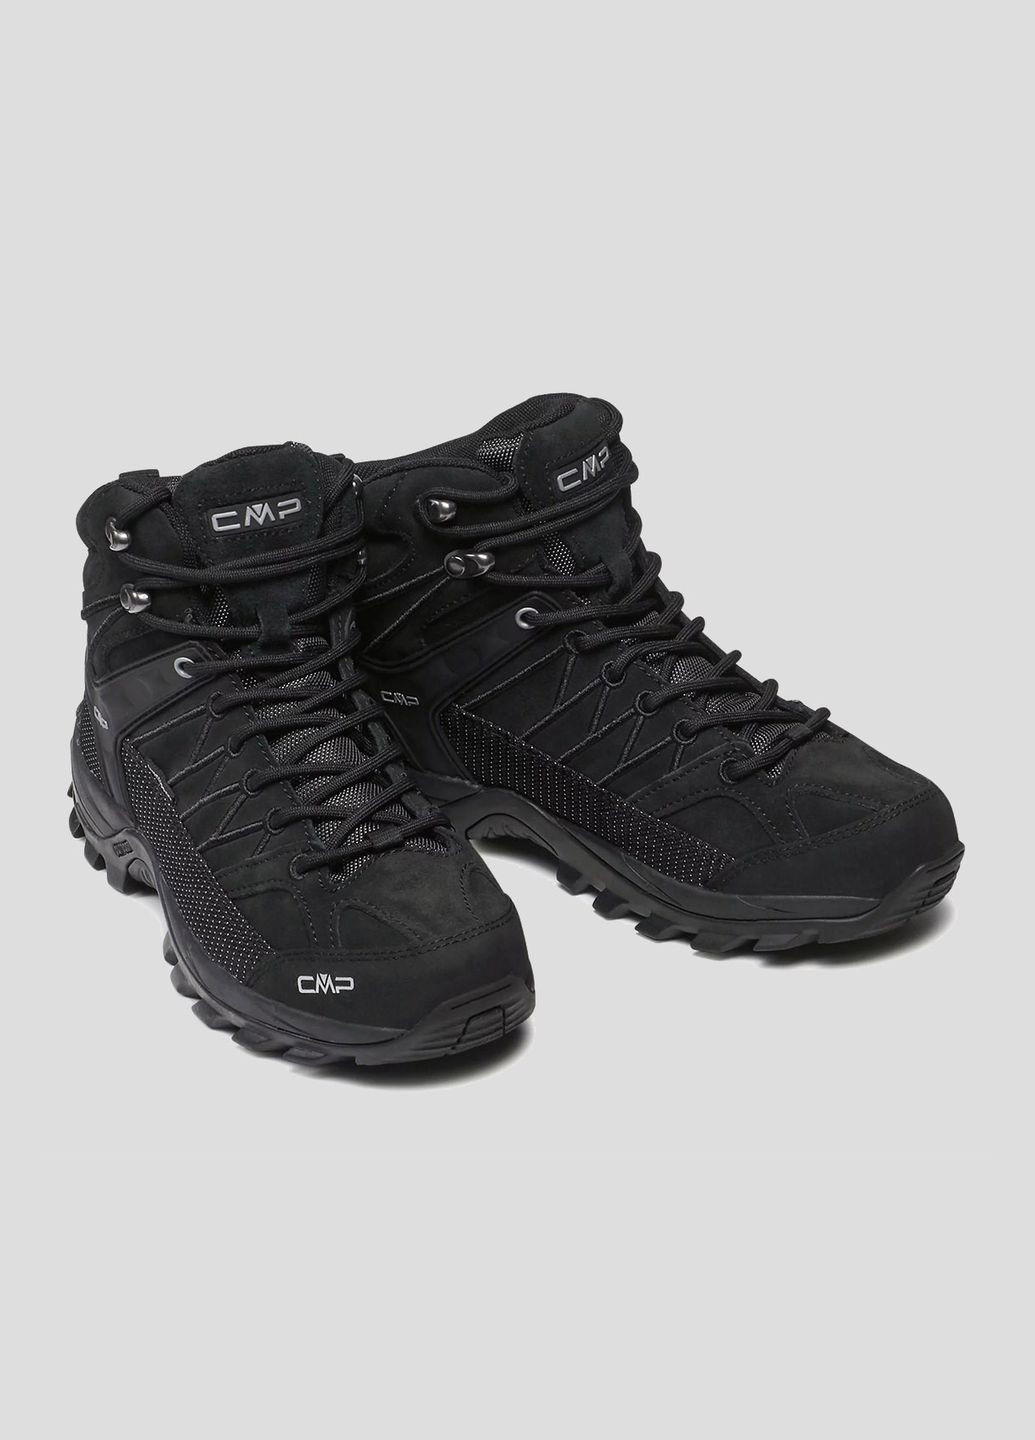 Черные демисезонные черные замшевые ботинки rigel mid trekking shoes CMP